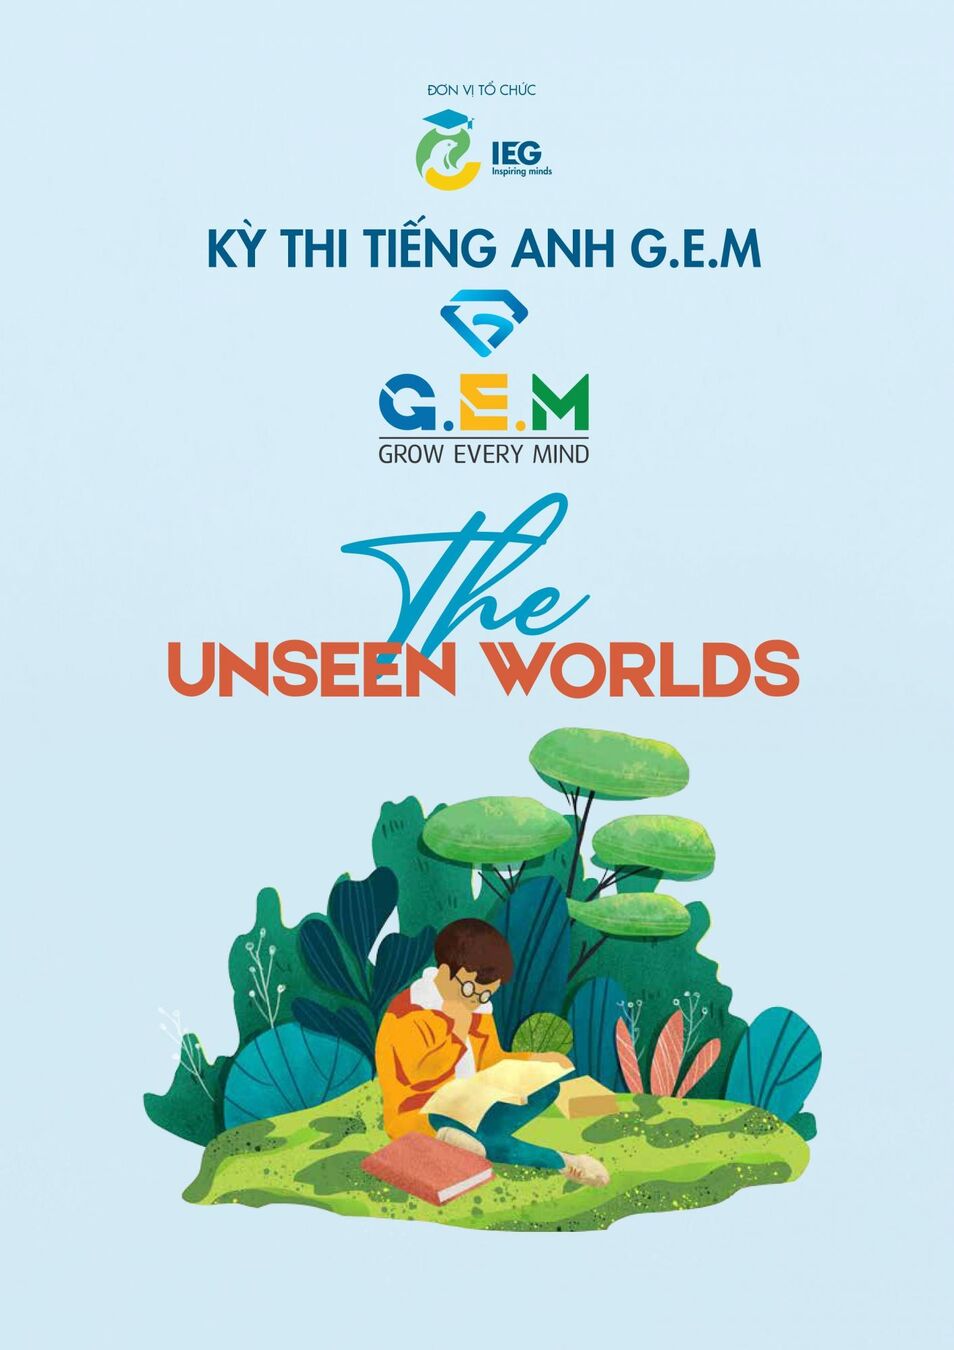 CUỘC THI GEM CONTEST 2019 VỚI CHỦ ĐỀ “THE UNSEEN WORLD"